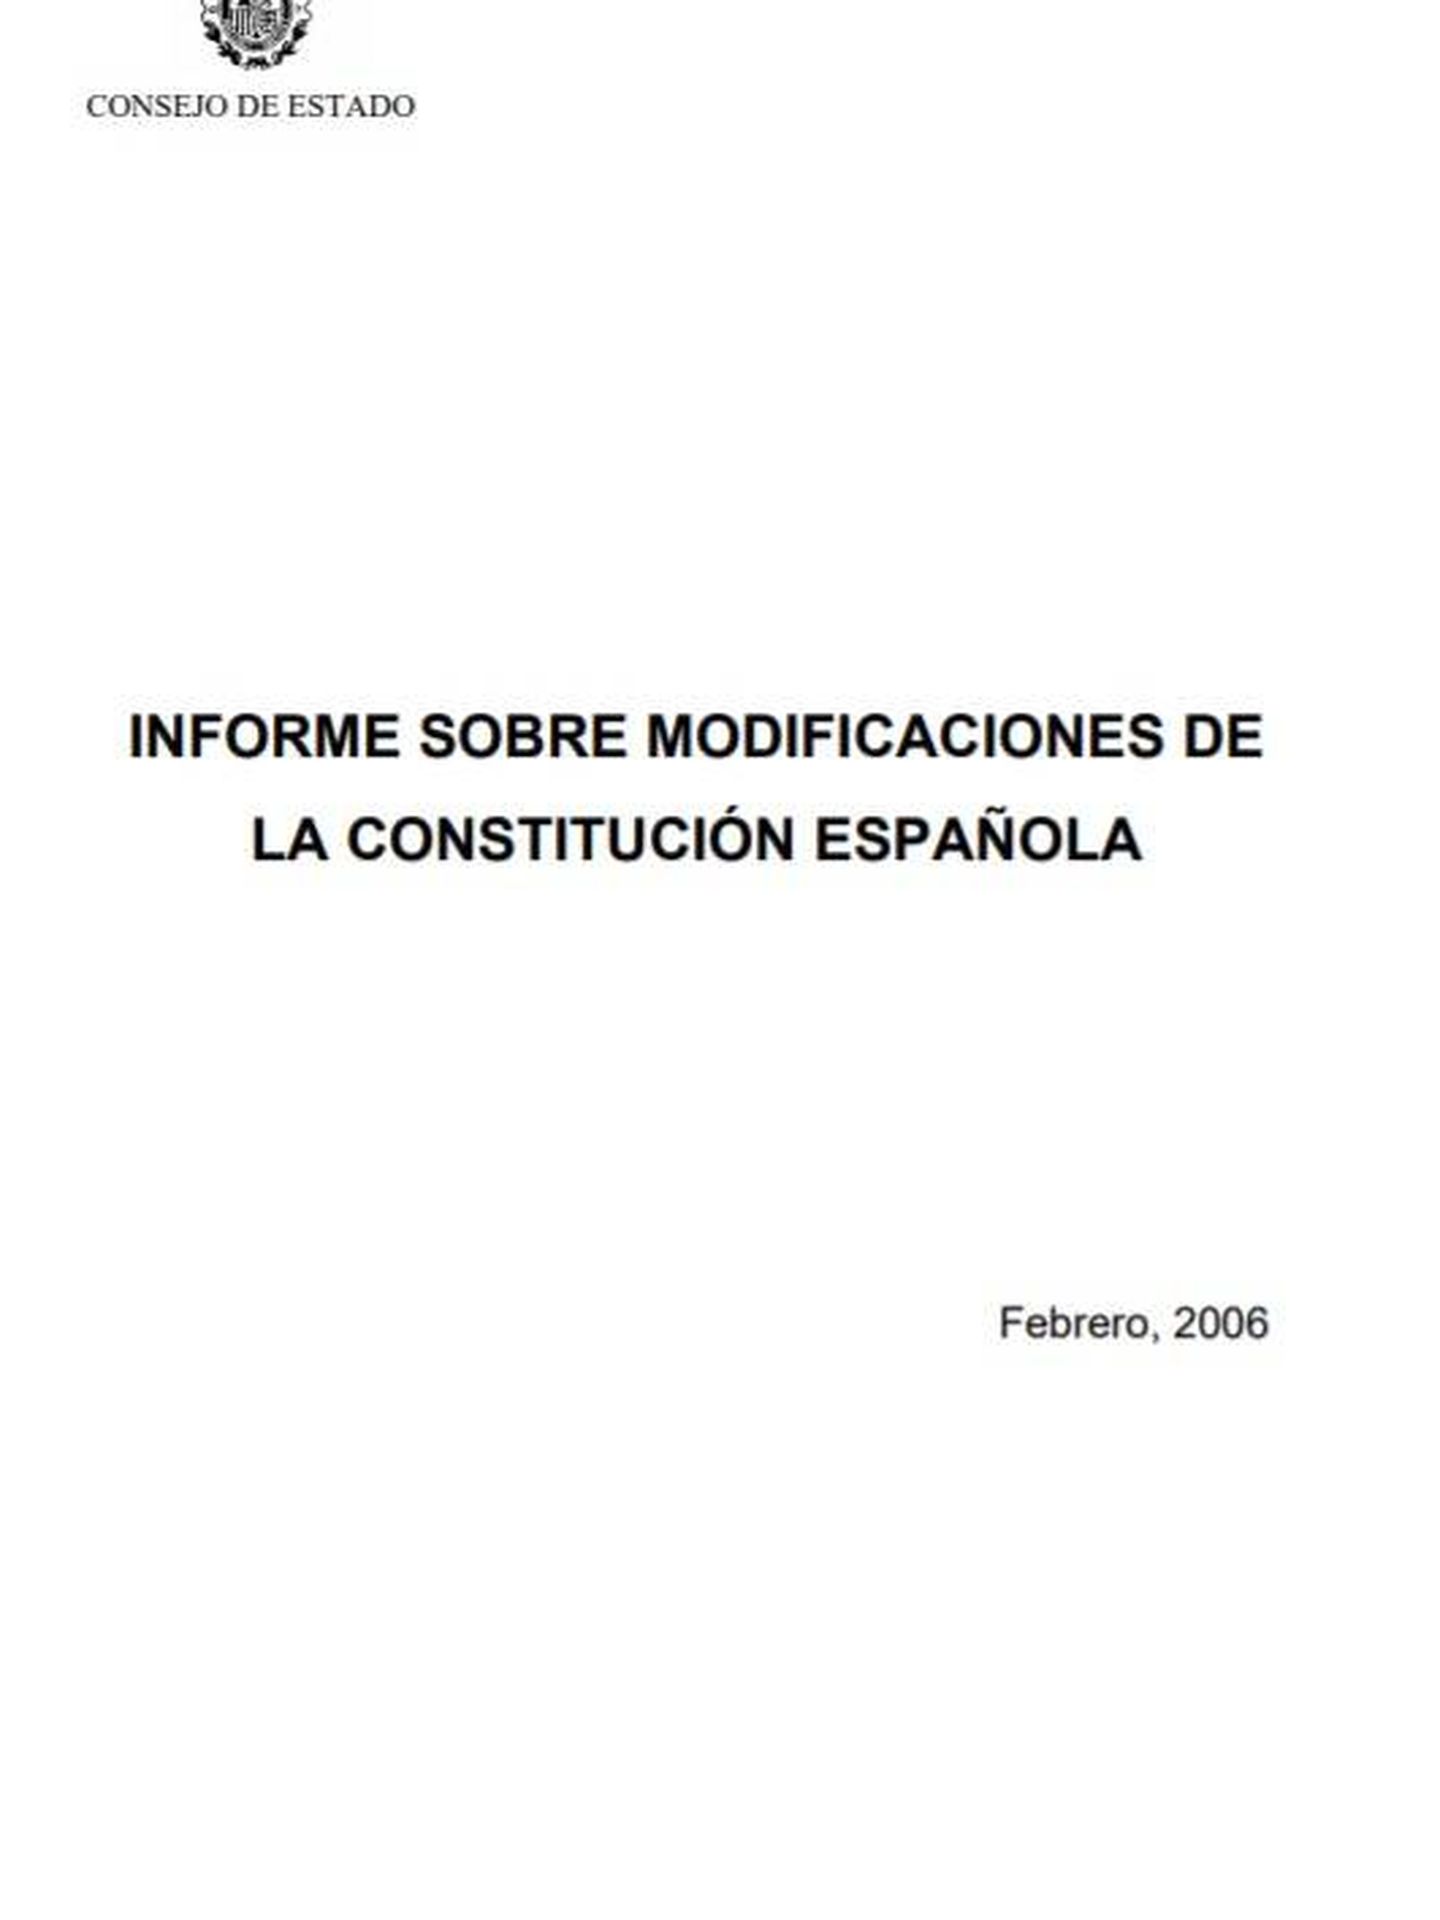 Consulte aquí en PDF el informe del Consejo de Estado de febrero de 2006 sobre la reforma constitucional. (EC)